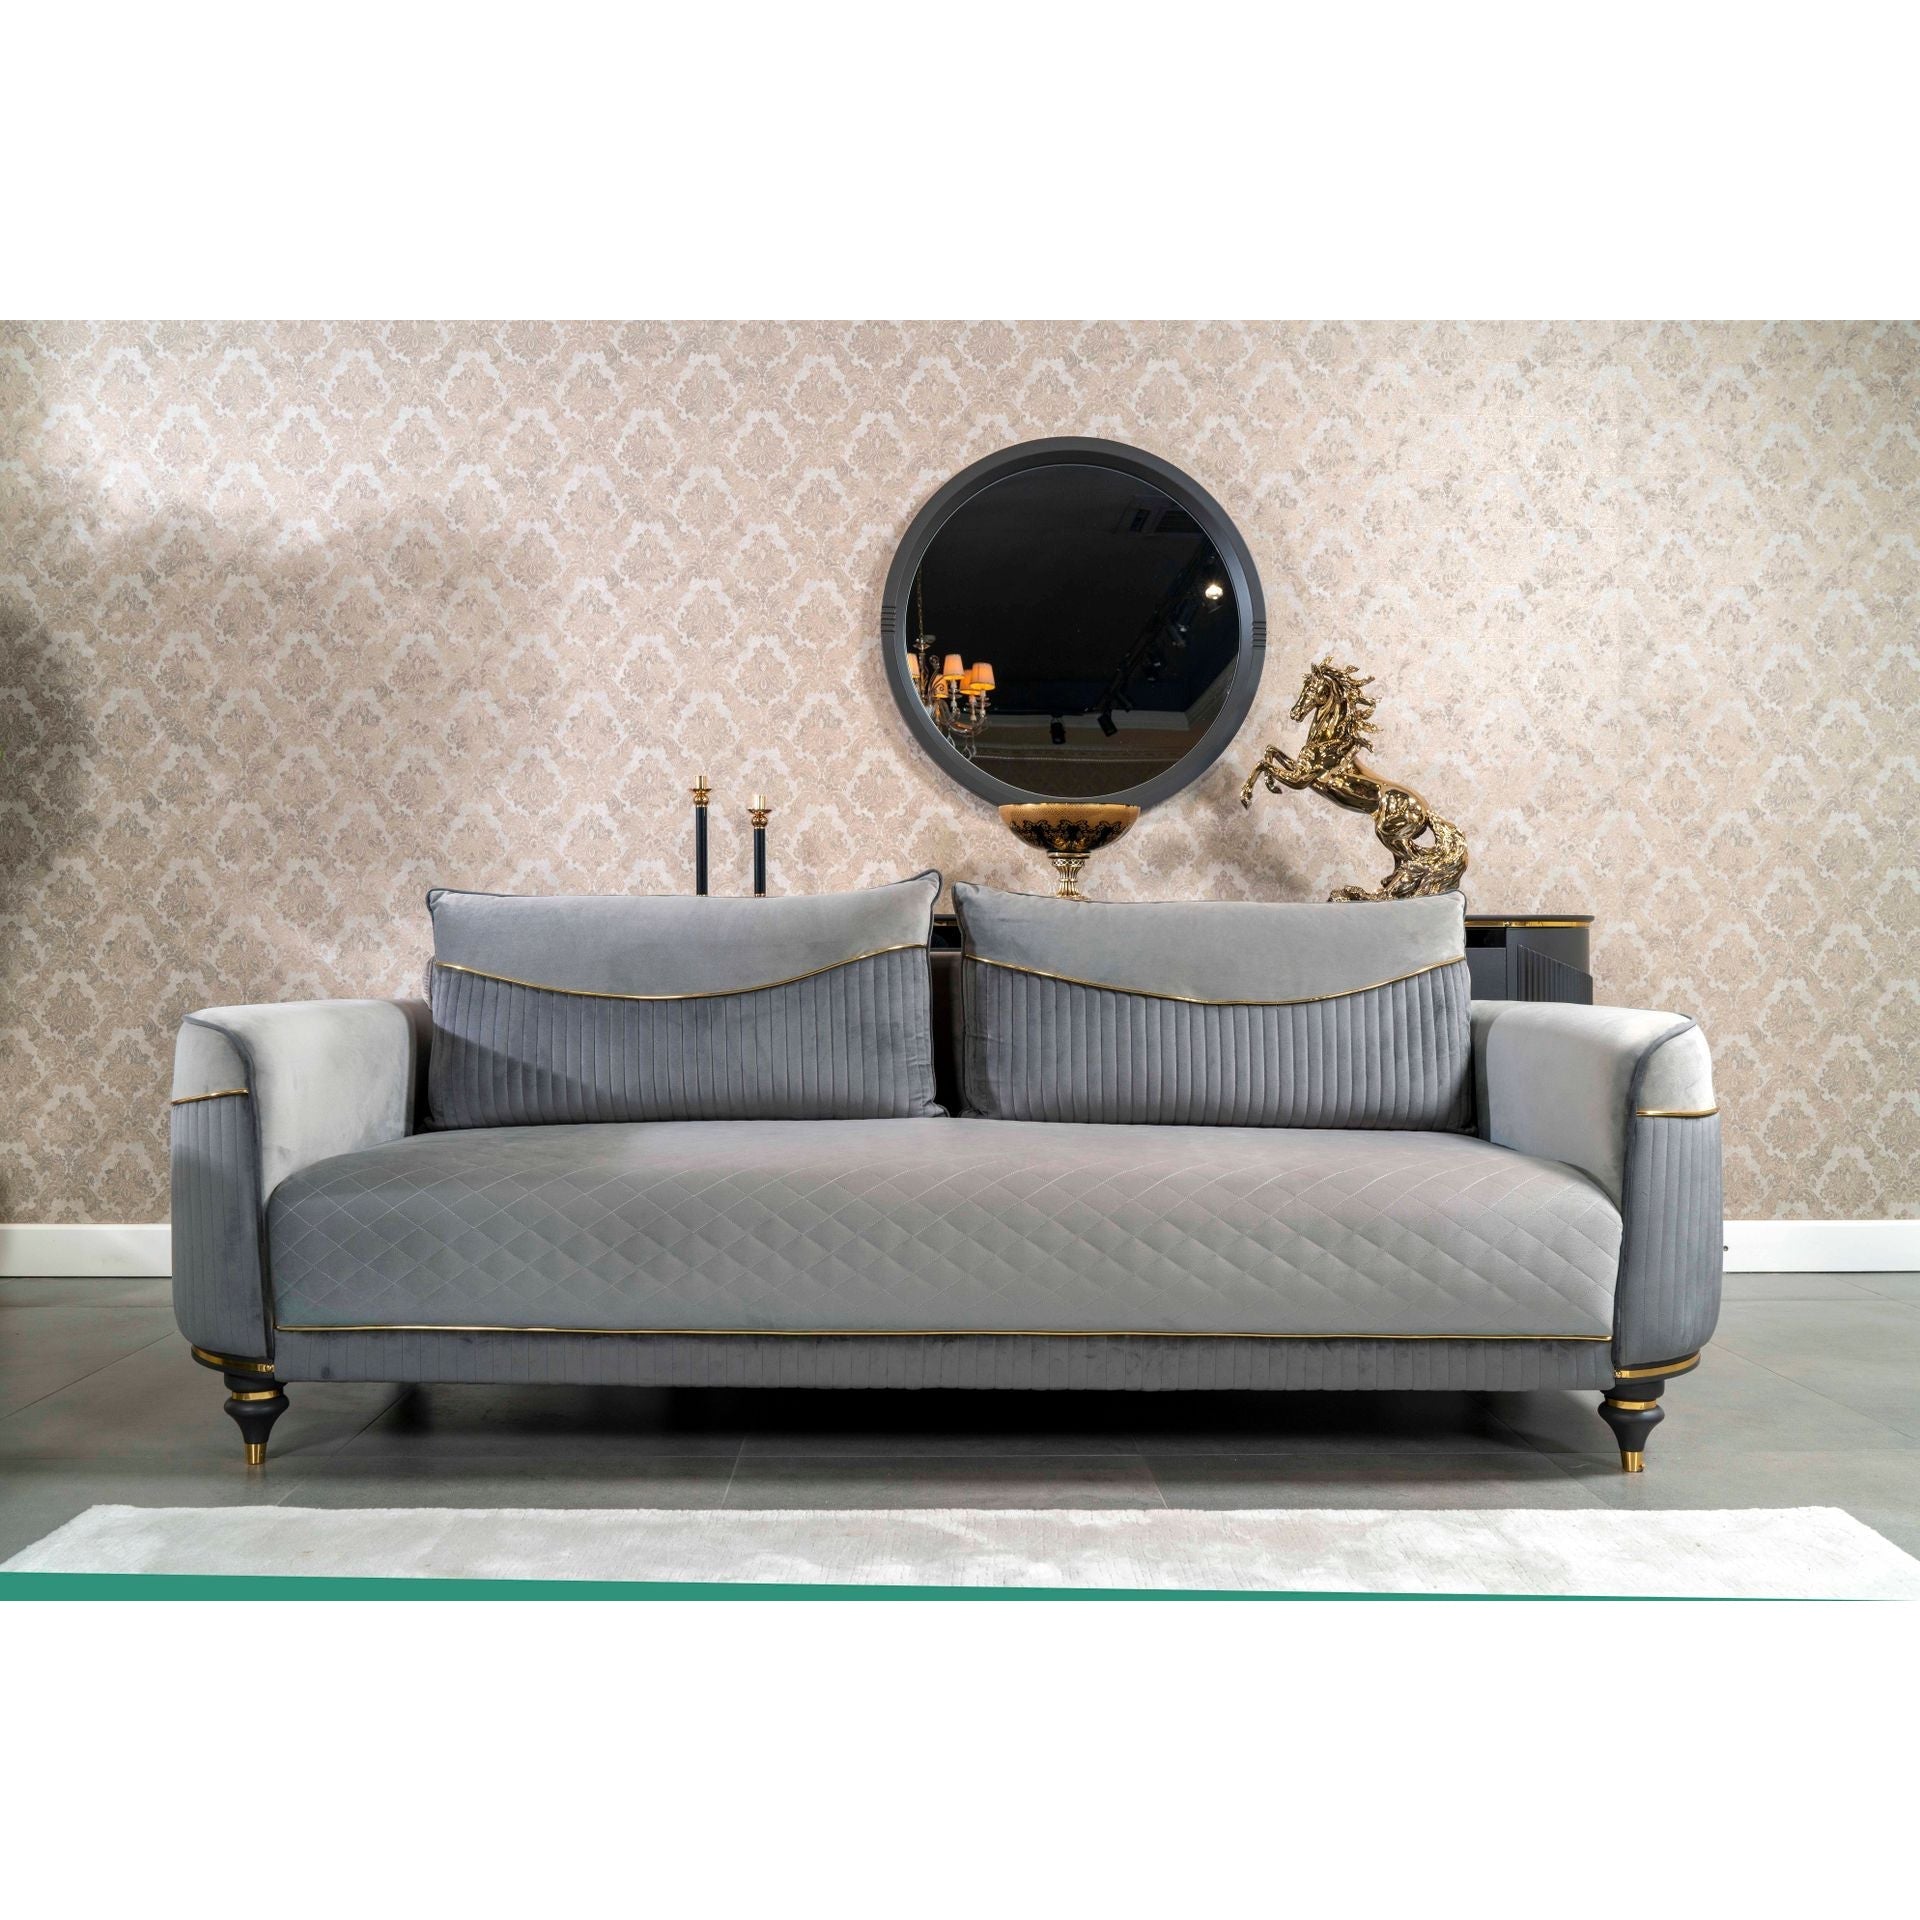 Isabella Soffgrupp - LINE Furniture Group